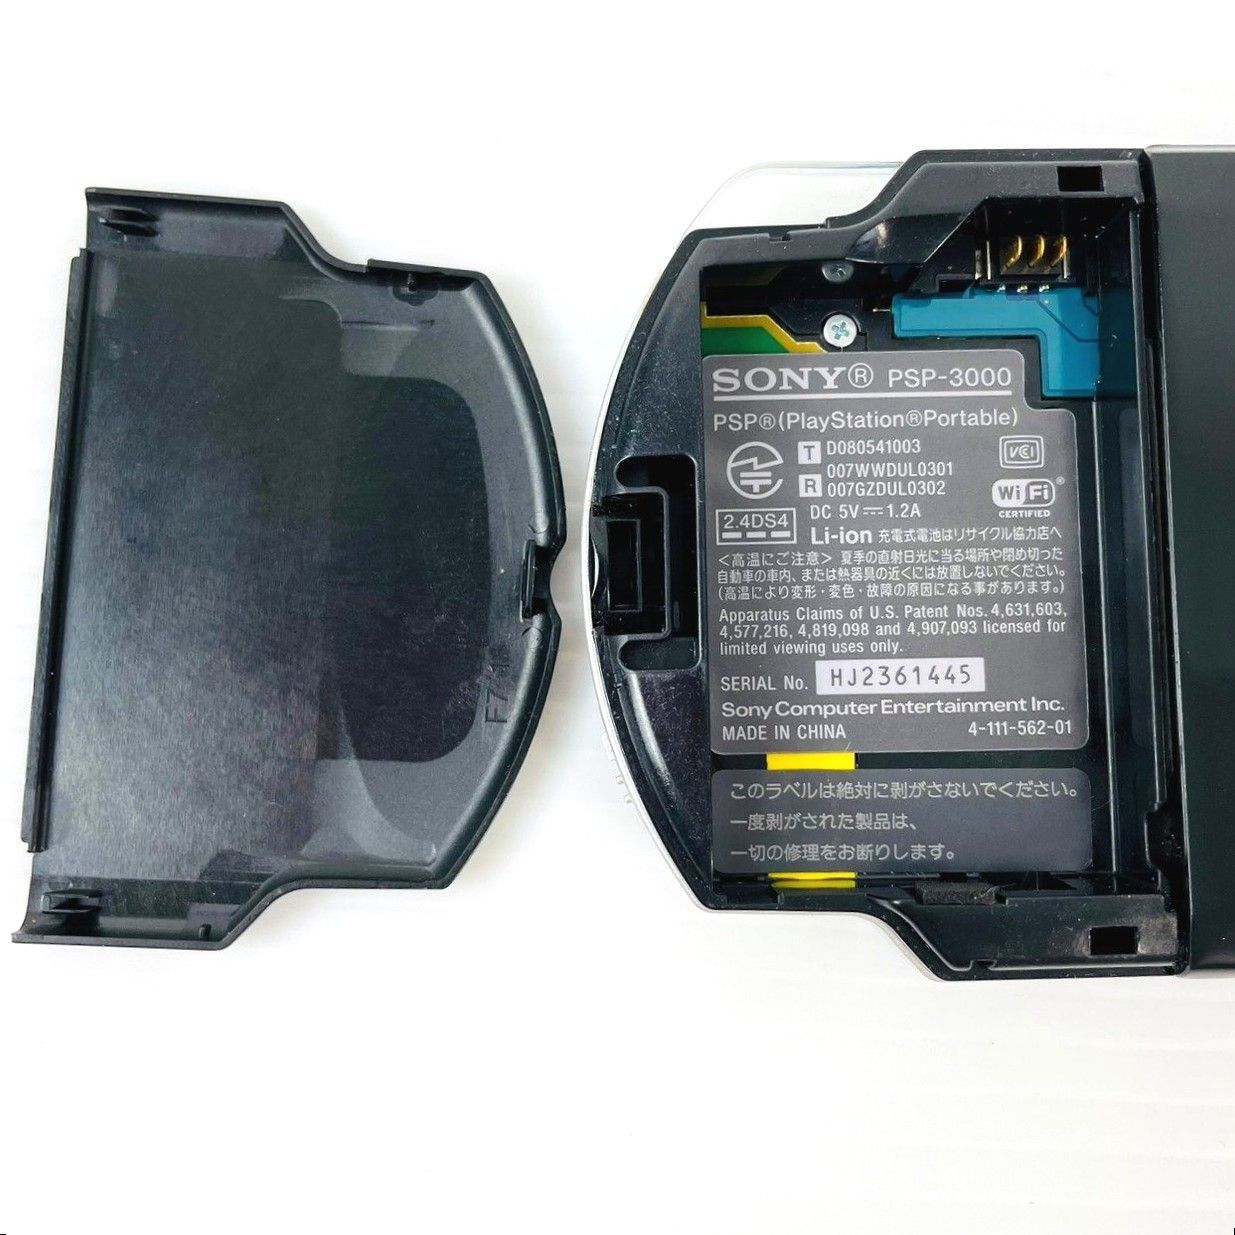 SONY プレイステーションポータブル PSP-3000 バリューパック 黒